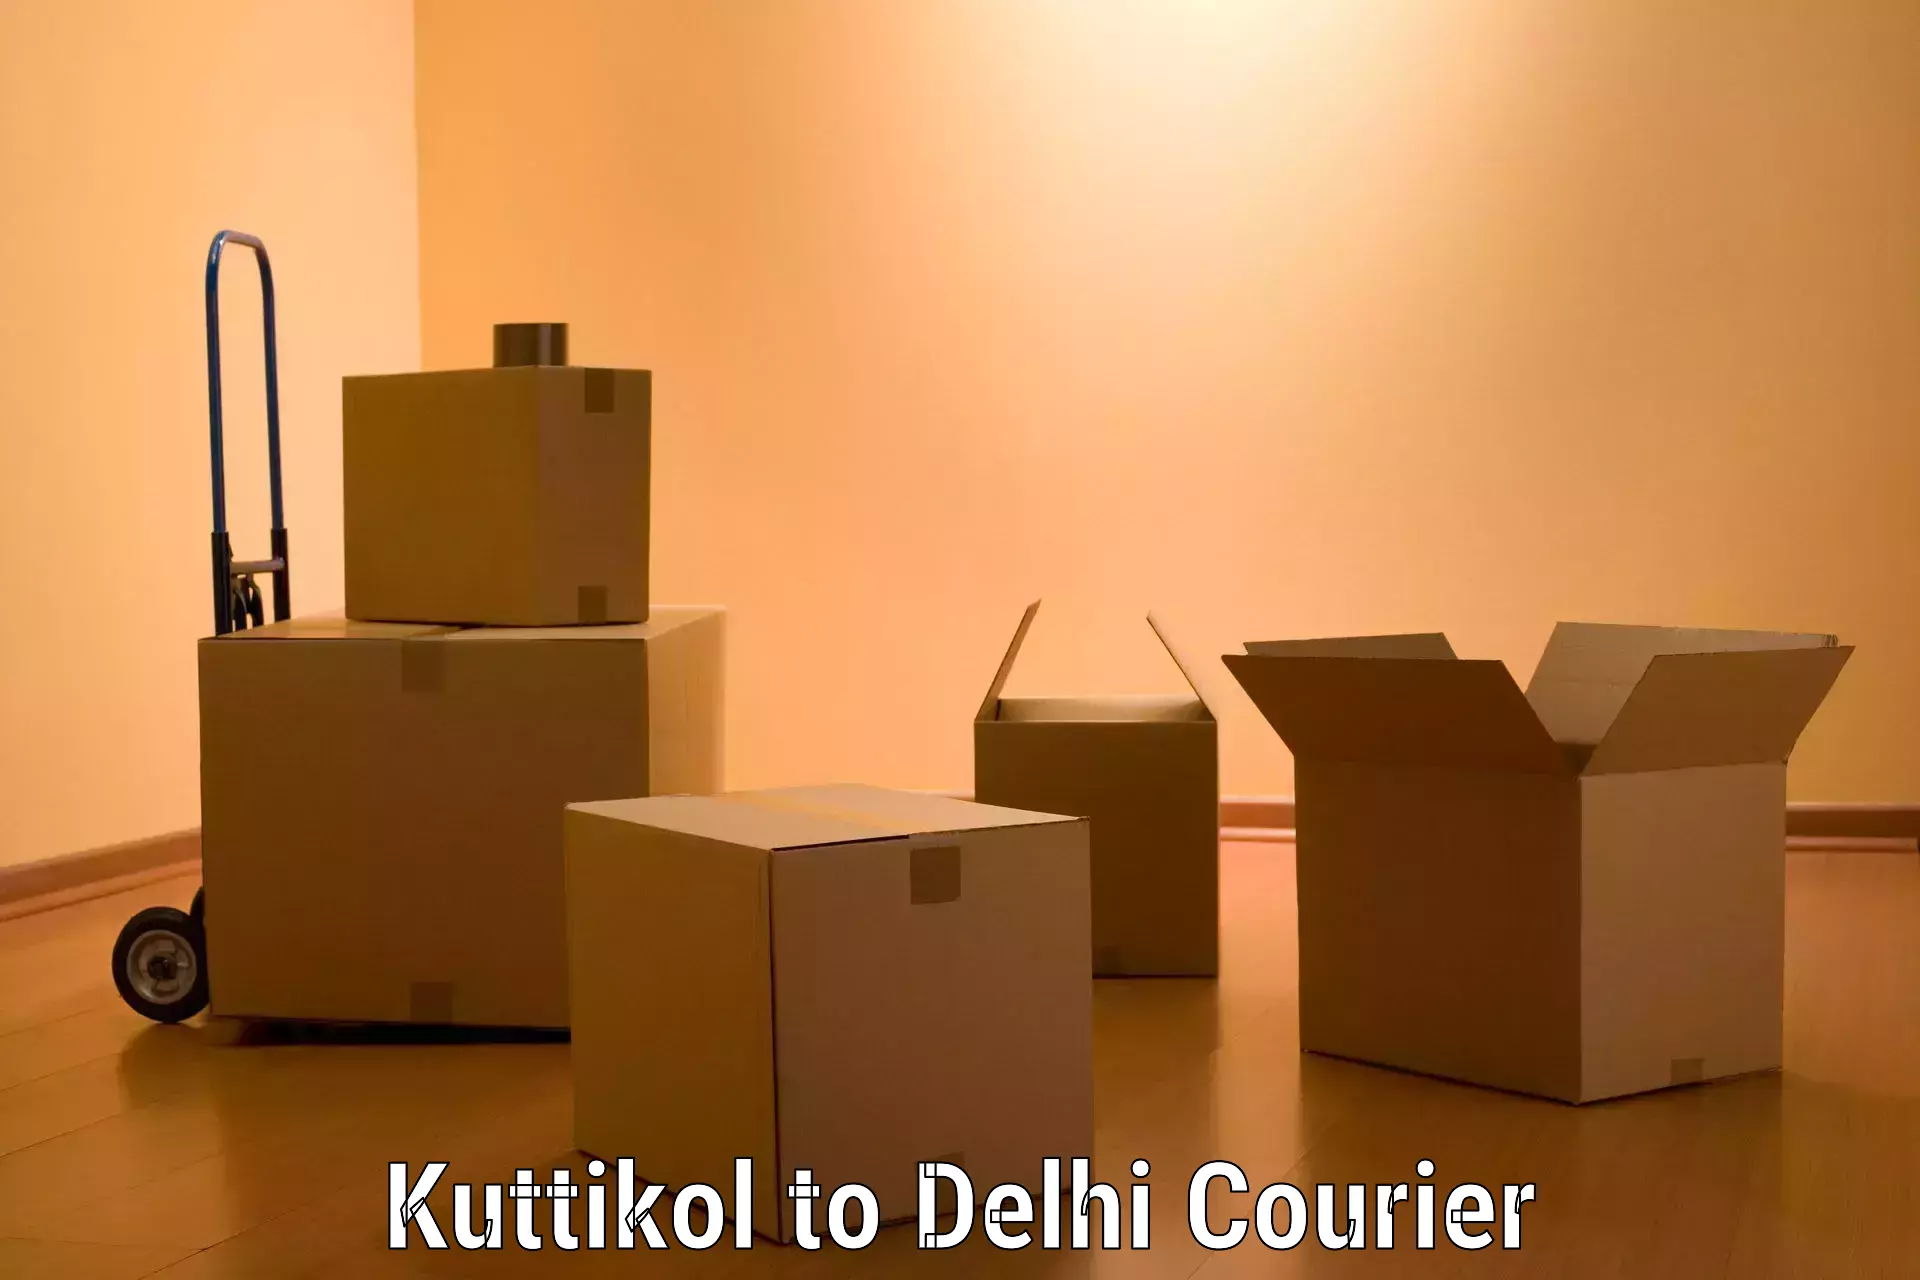 Home shifting experts Kuttikol to Delhi